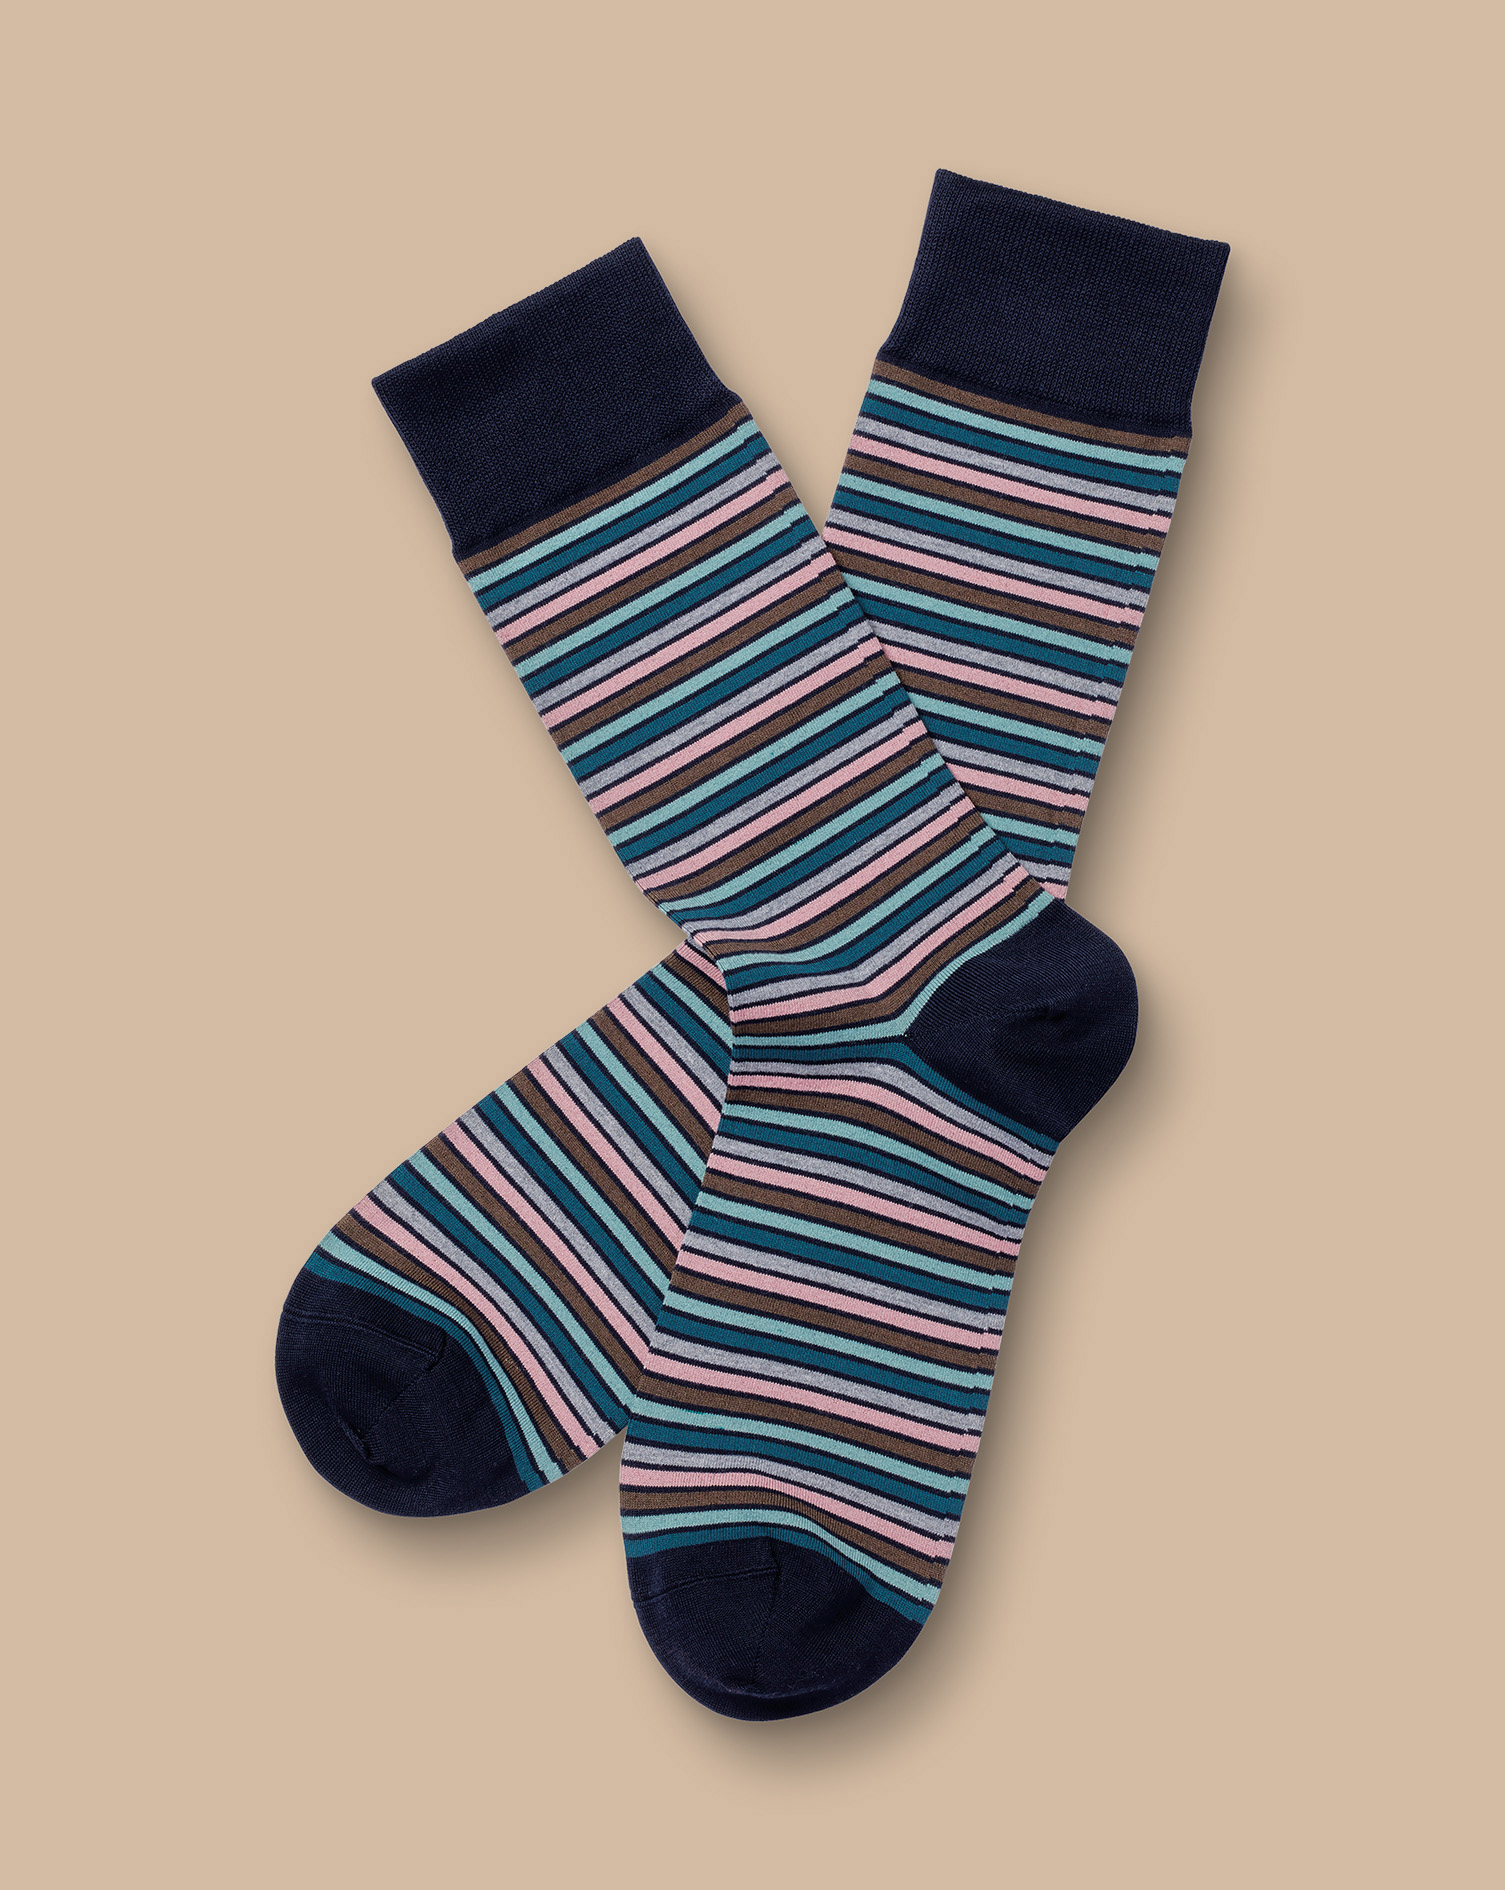 Men's Charles Tyrwhitt Stripe Socks - Teal Green Size 6-10 Cotton
